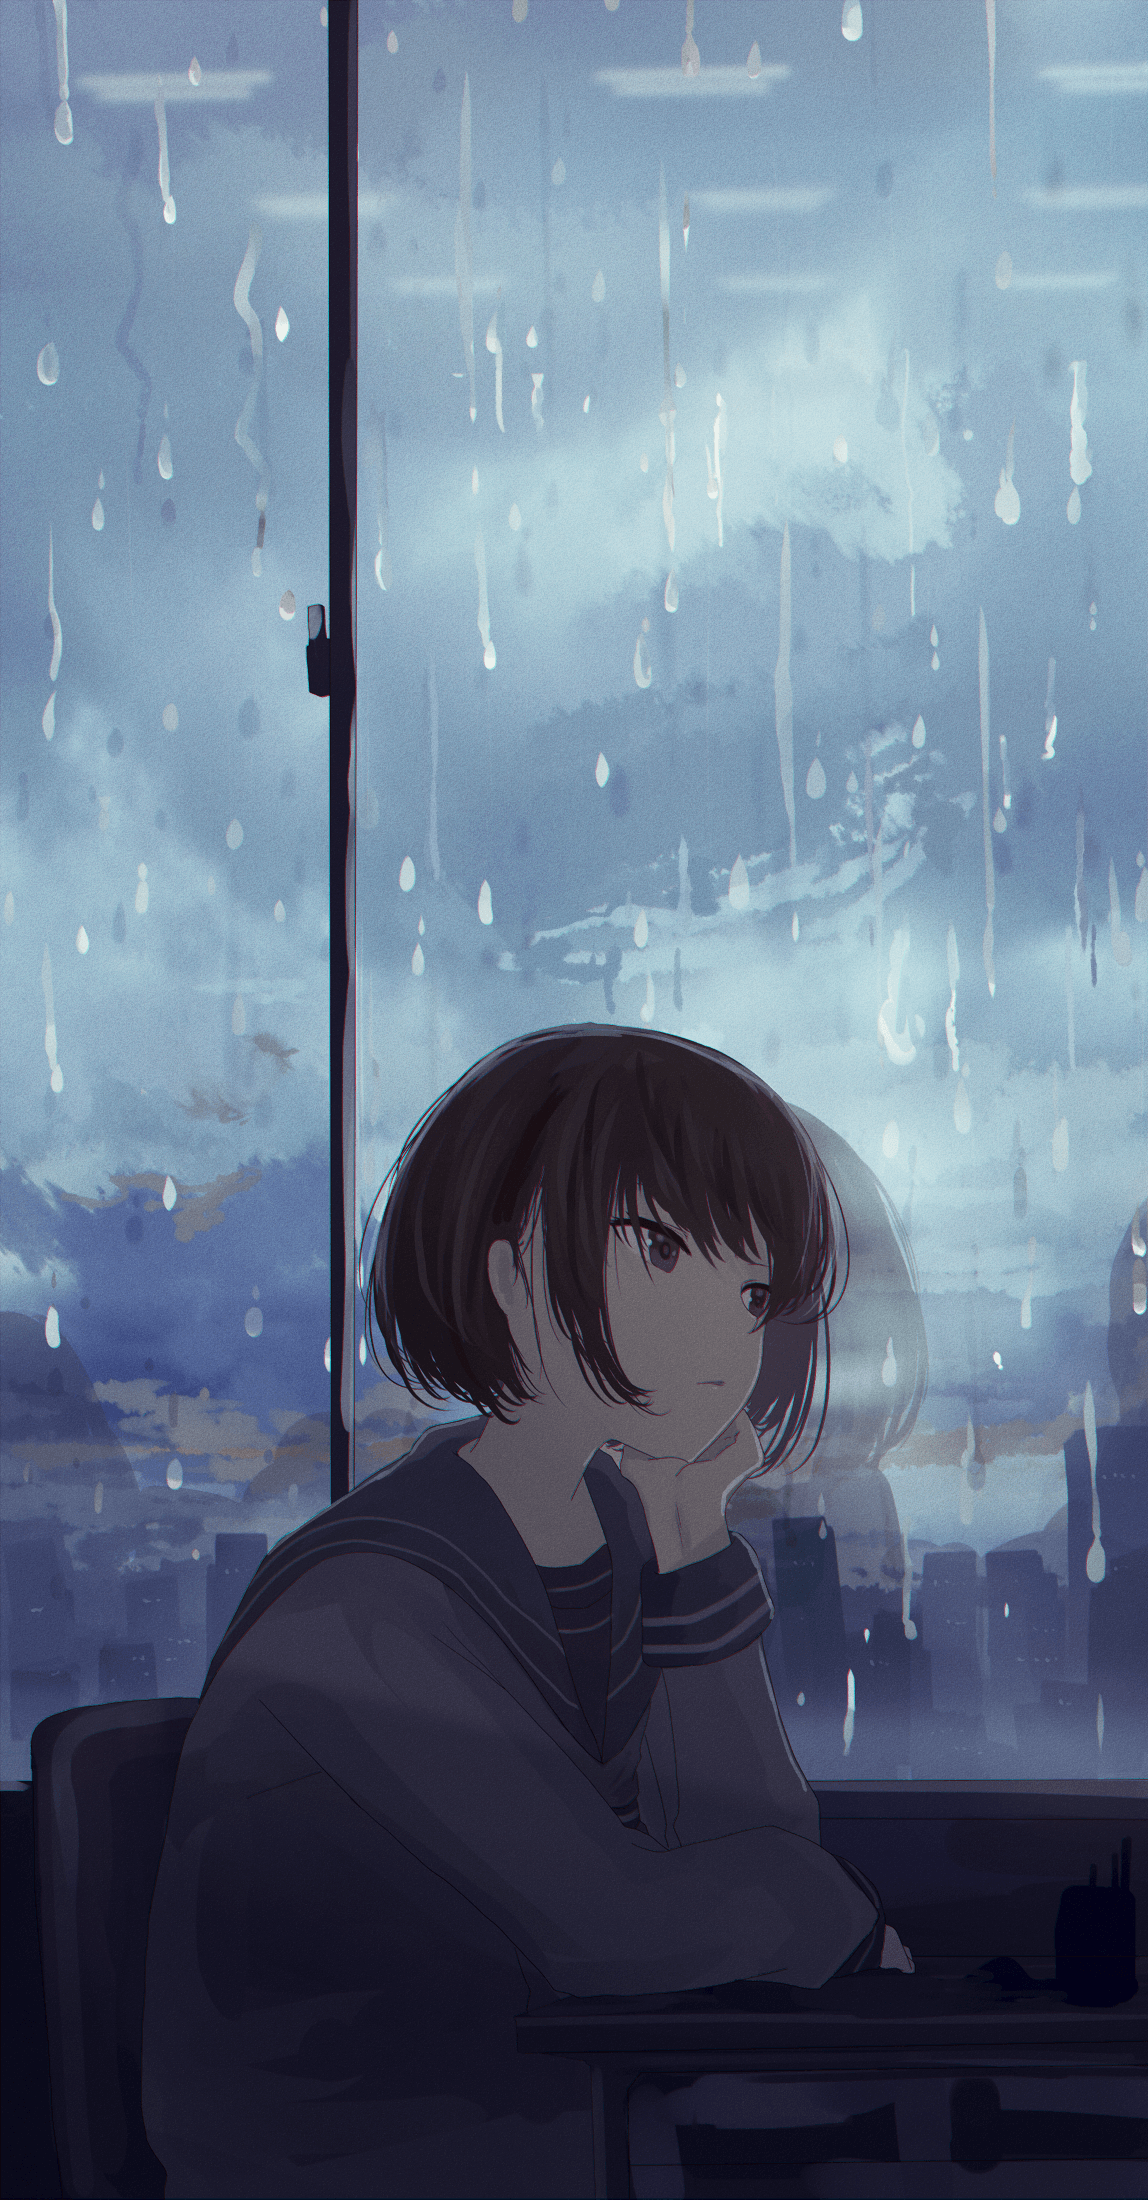 Sad Rain Anime Wallpapers